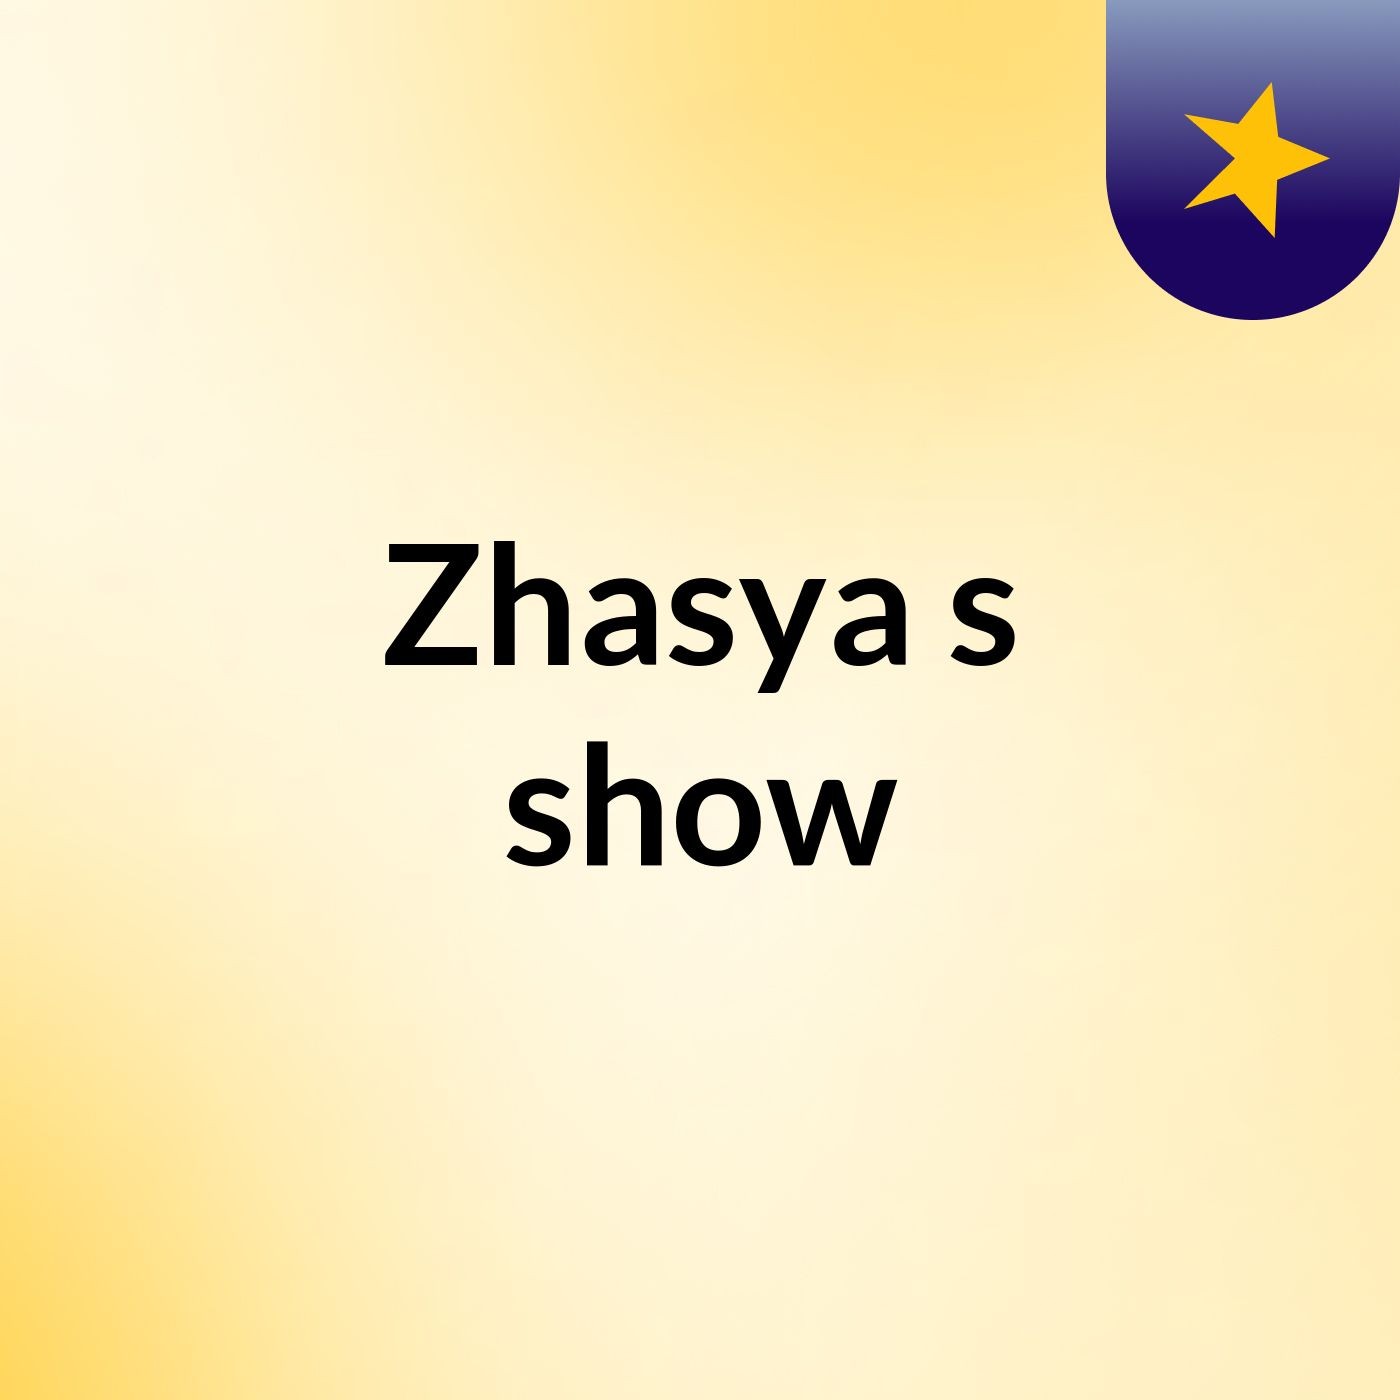 Zhasya's show